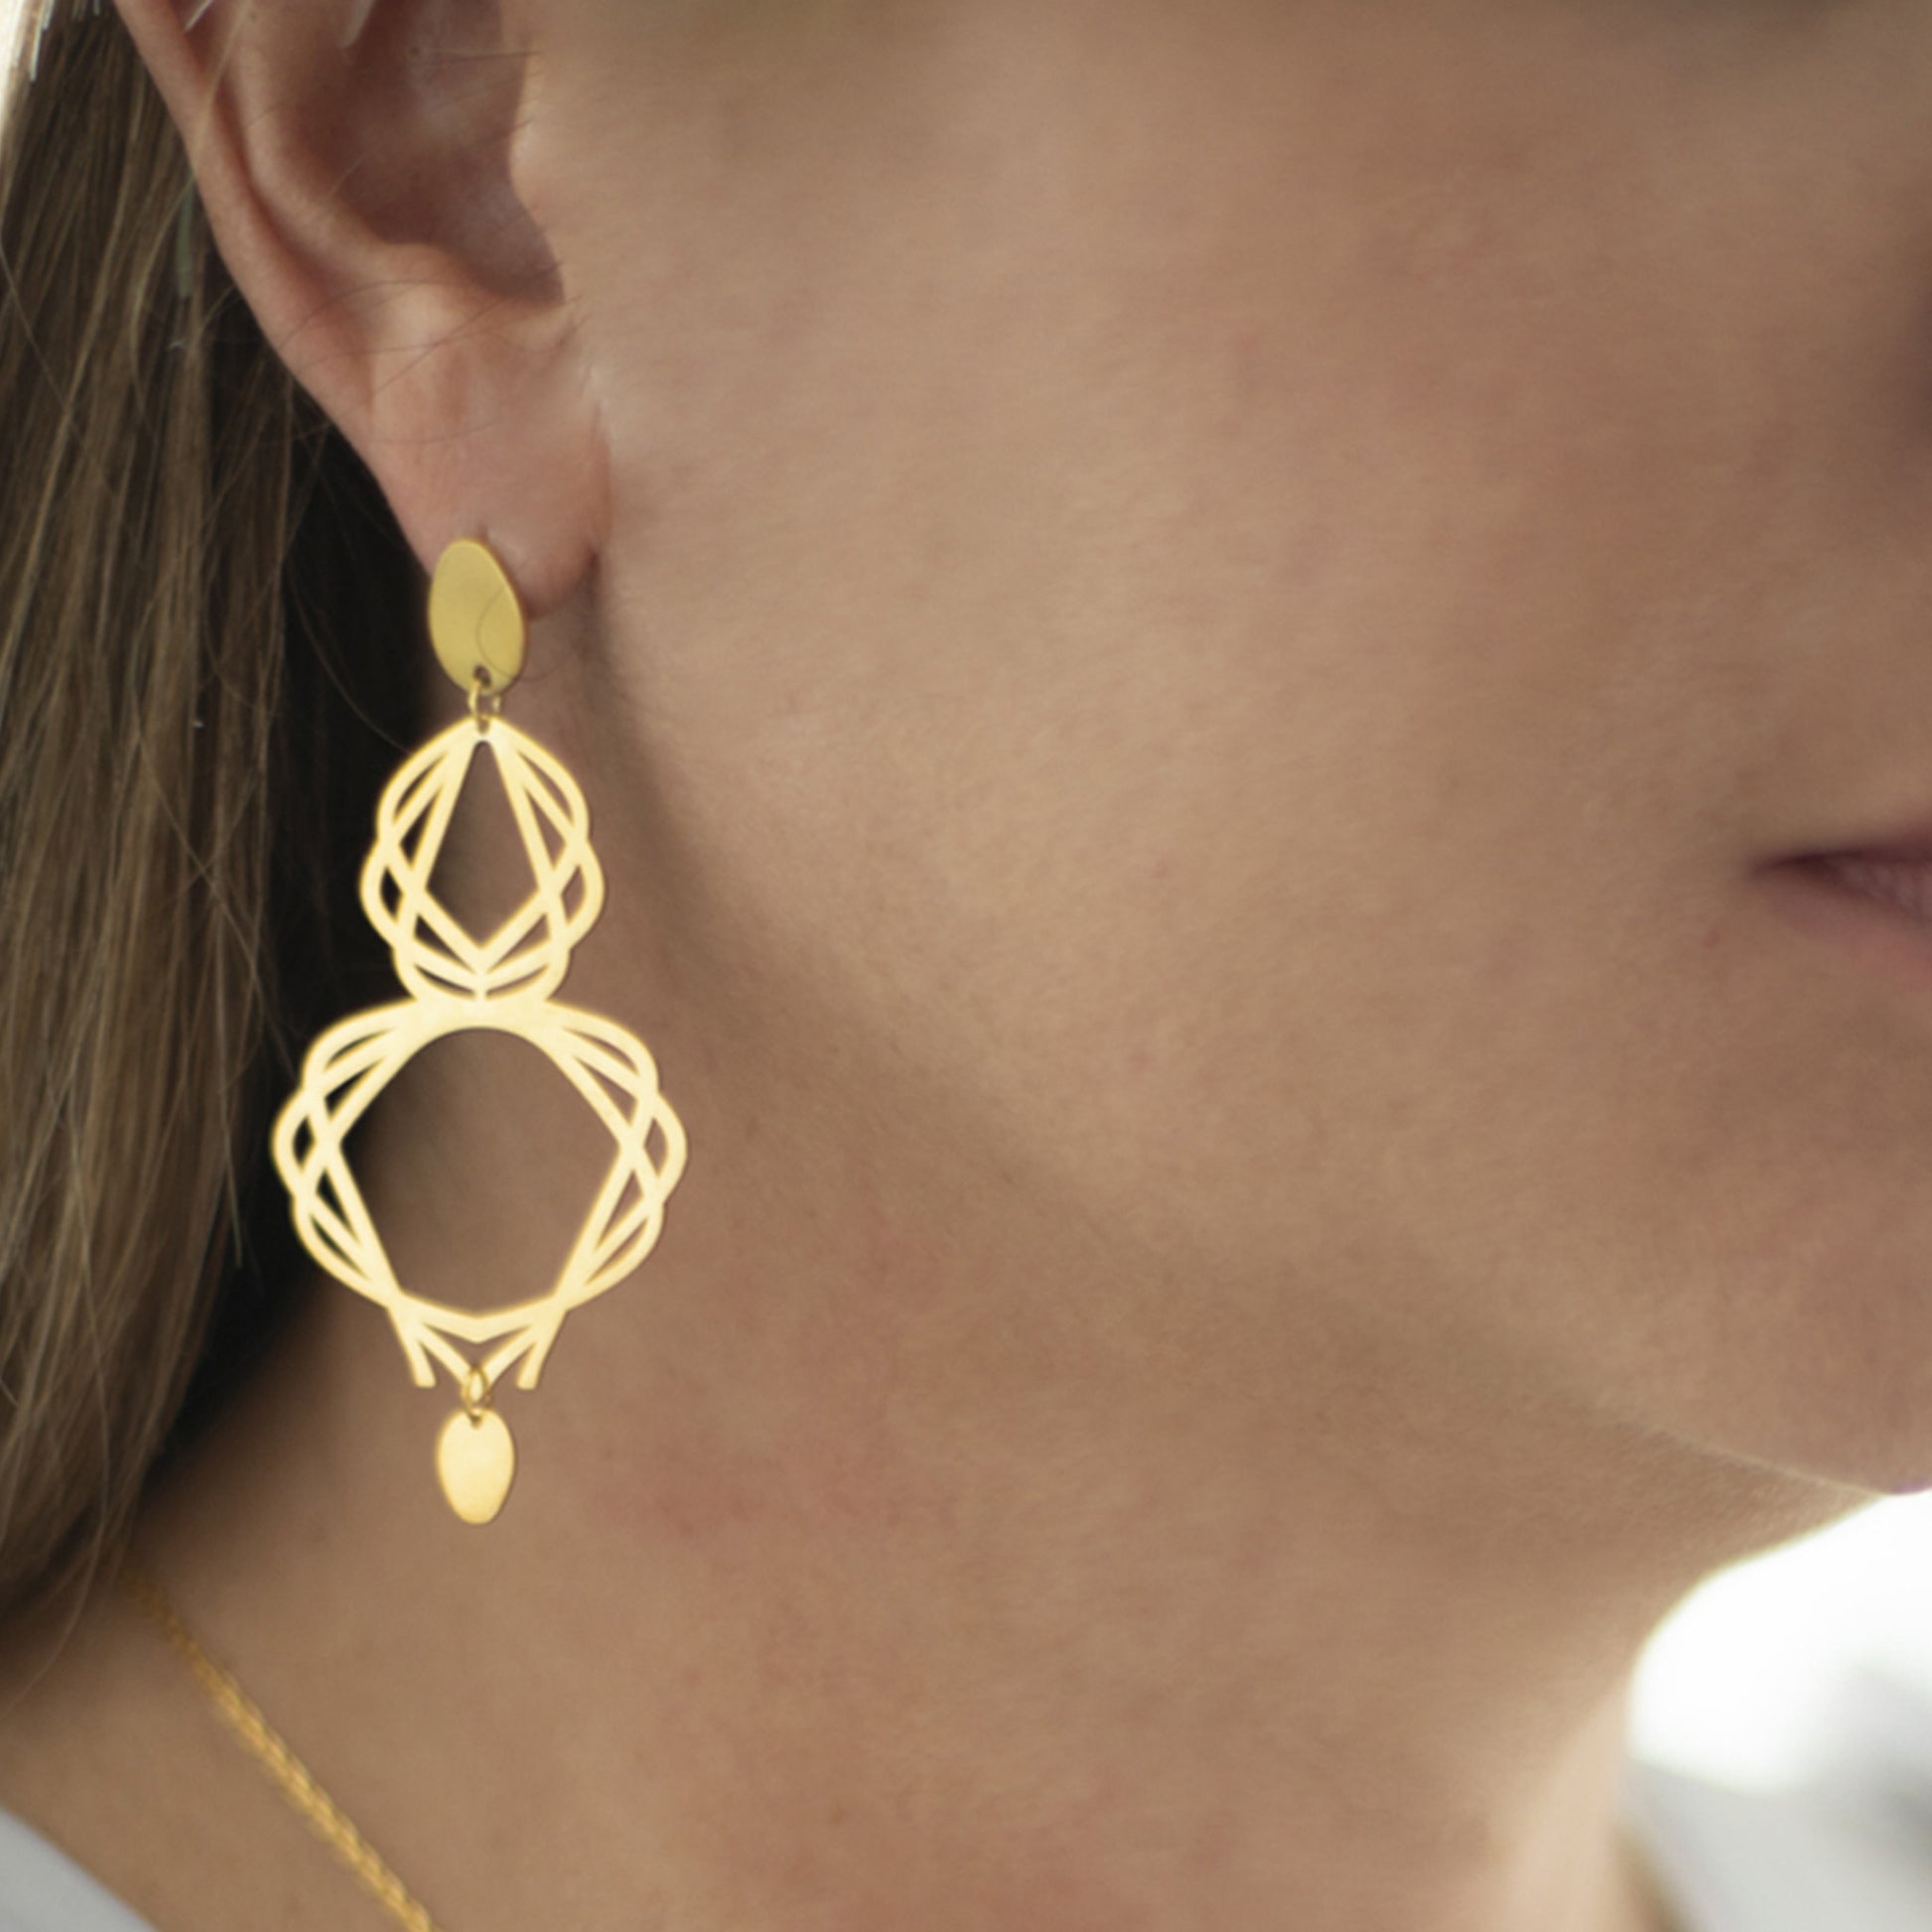 Guimard Earrings Eight / silver 925, 18kt gold plated earrings inspirados en el movimiento ART NOUVEAU del siglo XIX como homenaje al Arquitecto de la Opera de Paris, Hector Guimard / El Art Nouveau comprende formas curvas, naturales y sensuales.